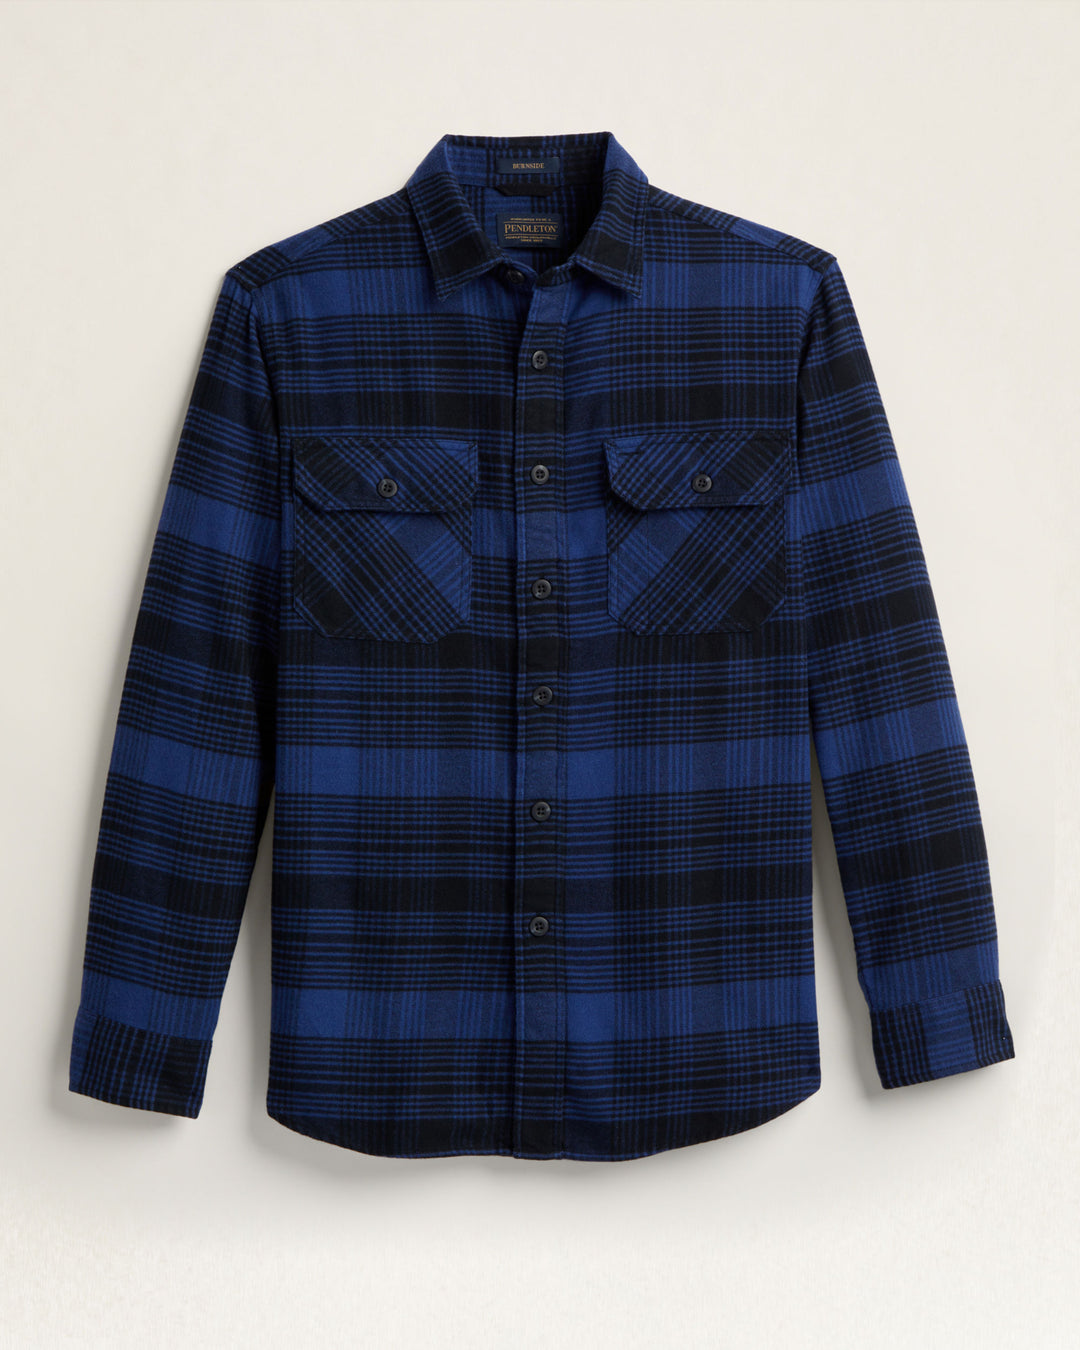 Burnside Flannel Shirt - Black & Royal Blue Plaid